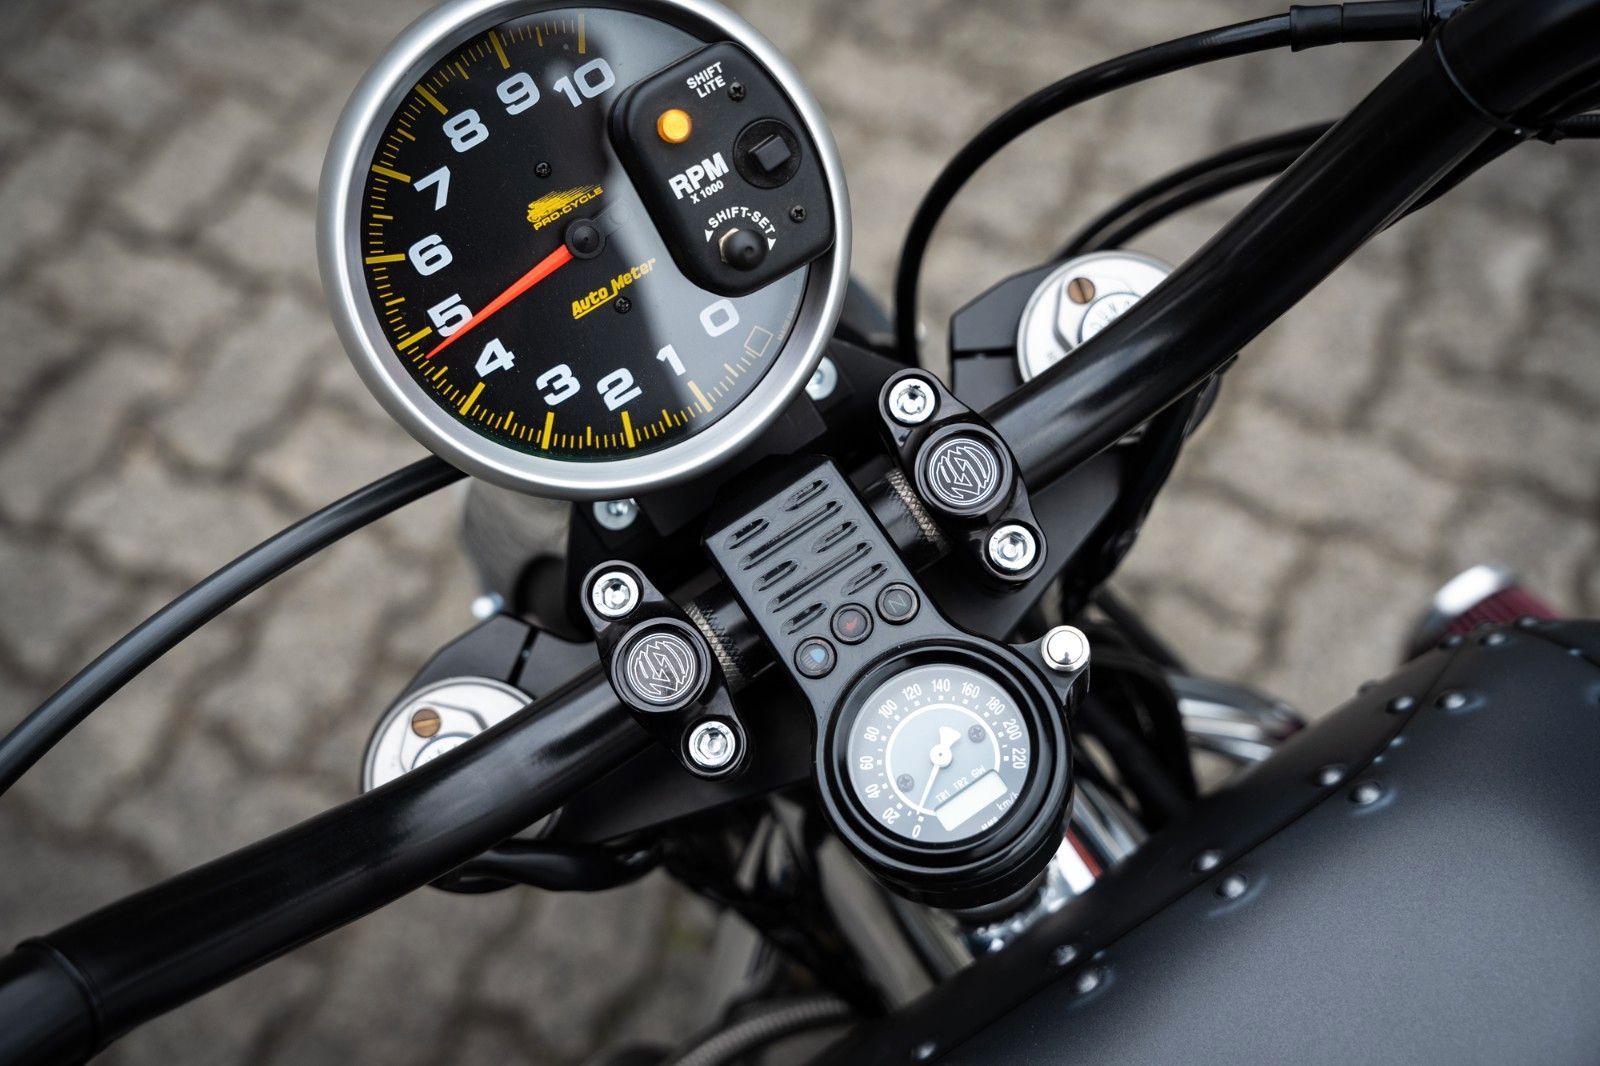 Fahrzeugabbildung Harley-Davidson SOHN-MOTORCYCLES GREYHOUND VR1750 EINZELSTÜCK